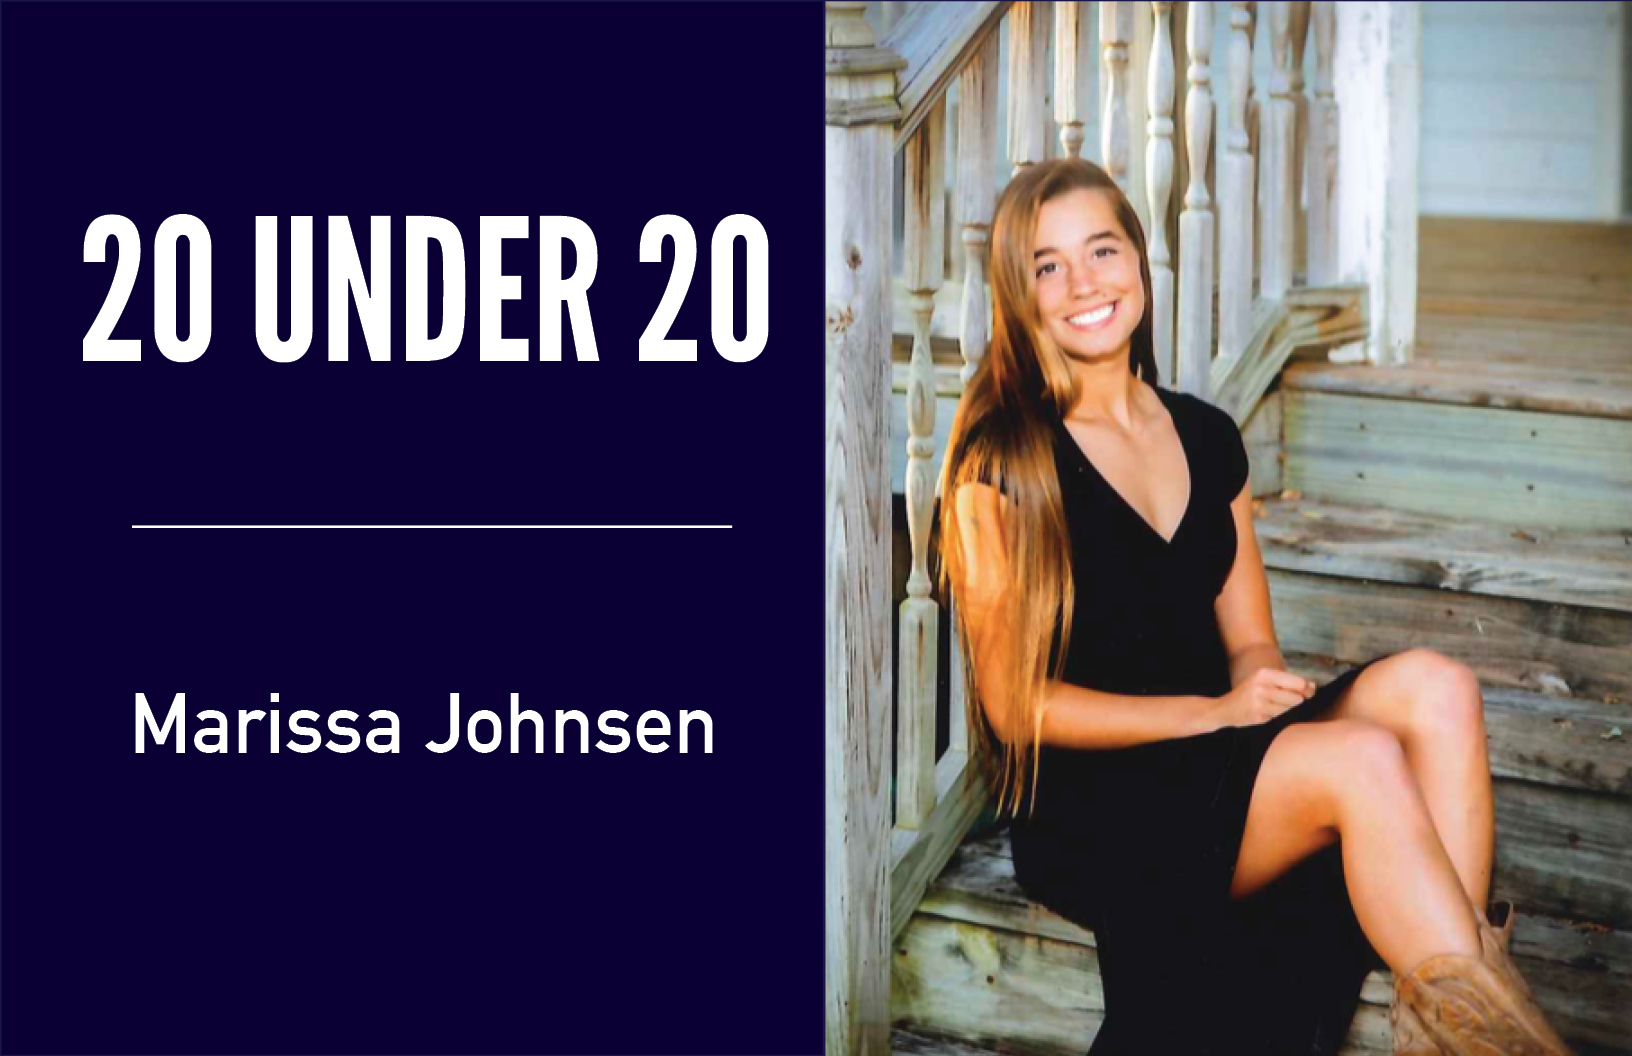 Marissa-Johnsen-20-under-20